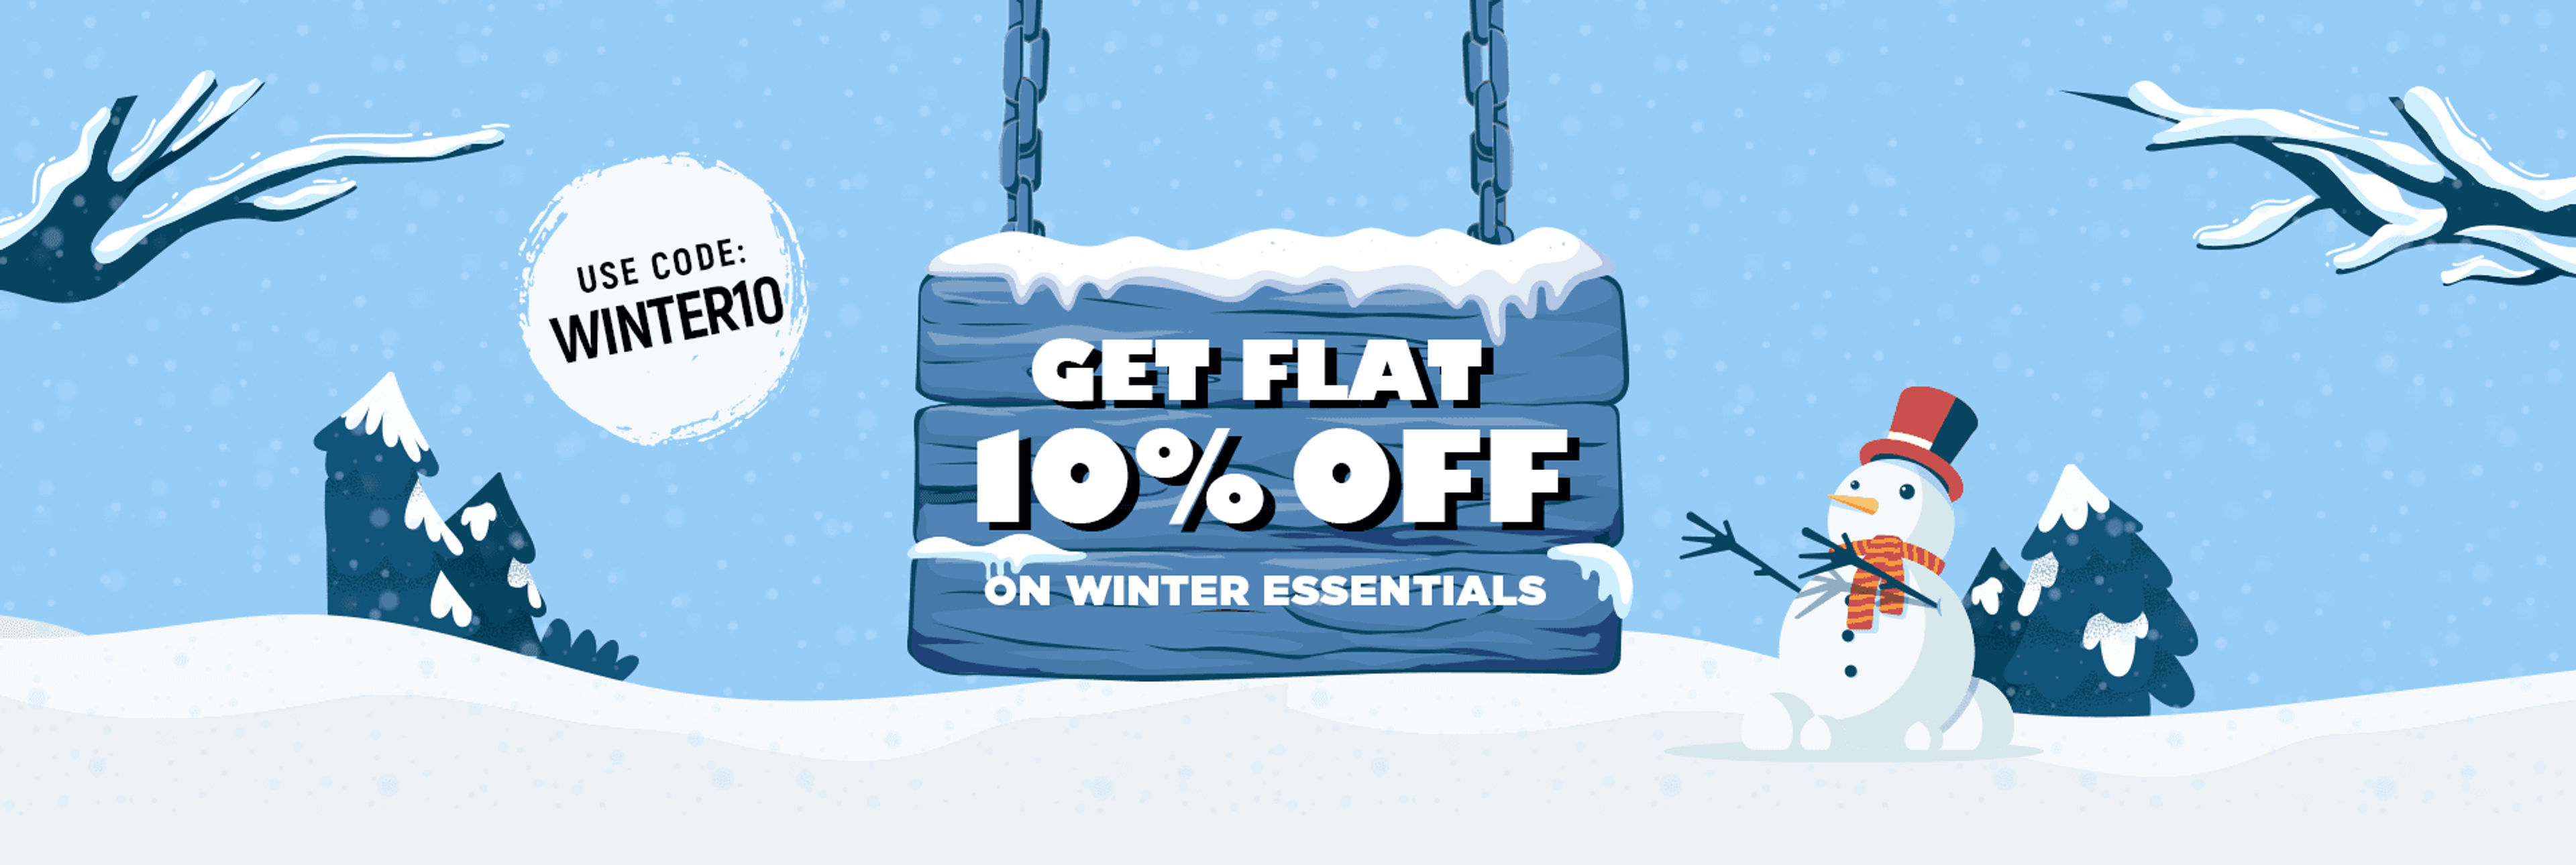 Get Flat 10% off on Winter Essentials